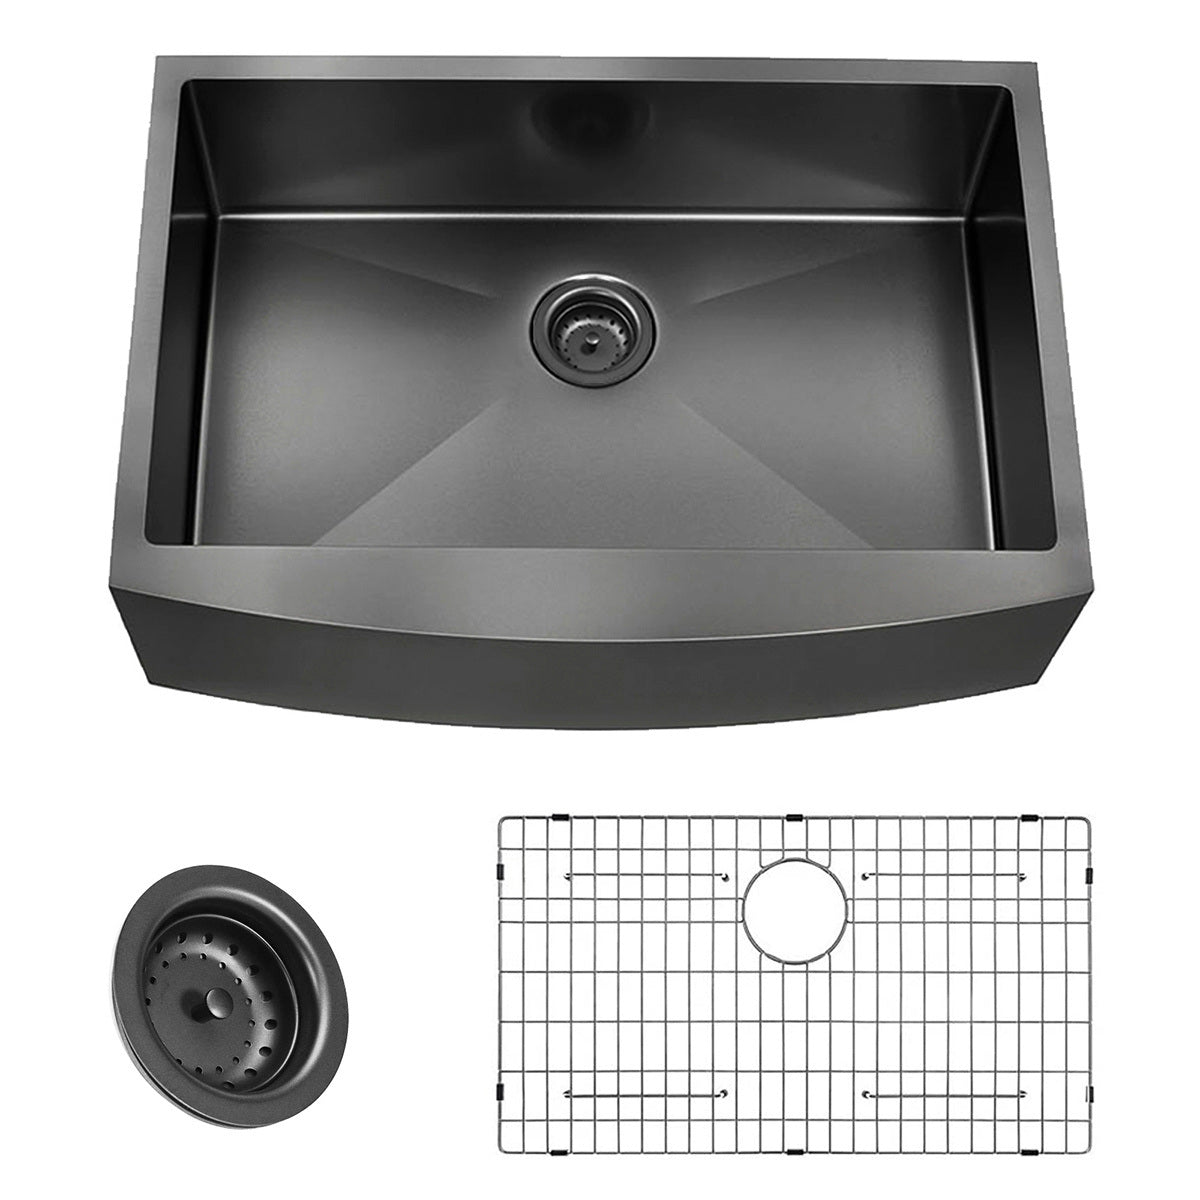 Farmhouse Sink Gunmetal Black Kitchen Sink Stainless Steel 10 inch deep, Apron Kitchen Sink, 16 Guage Handmade Sink with Drain